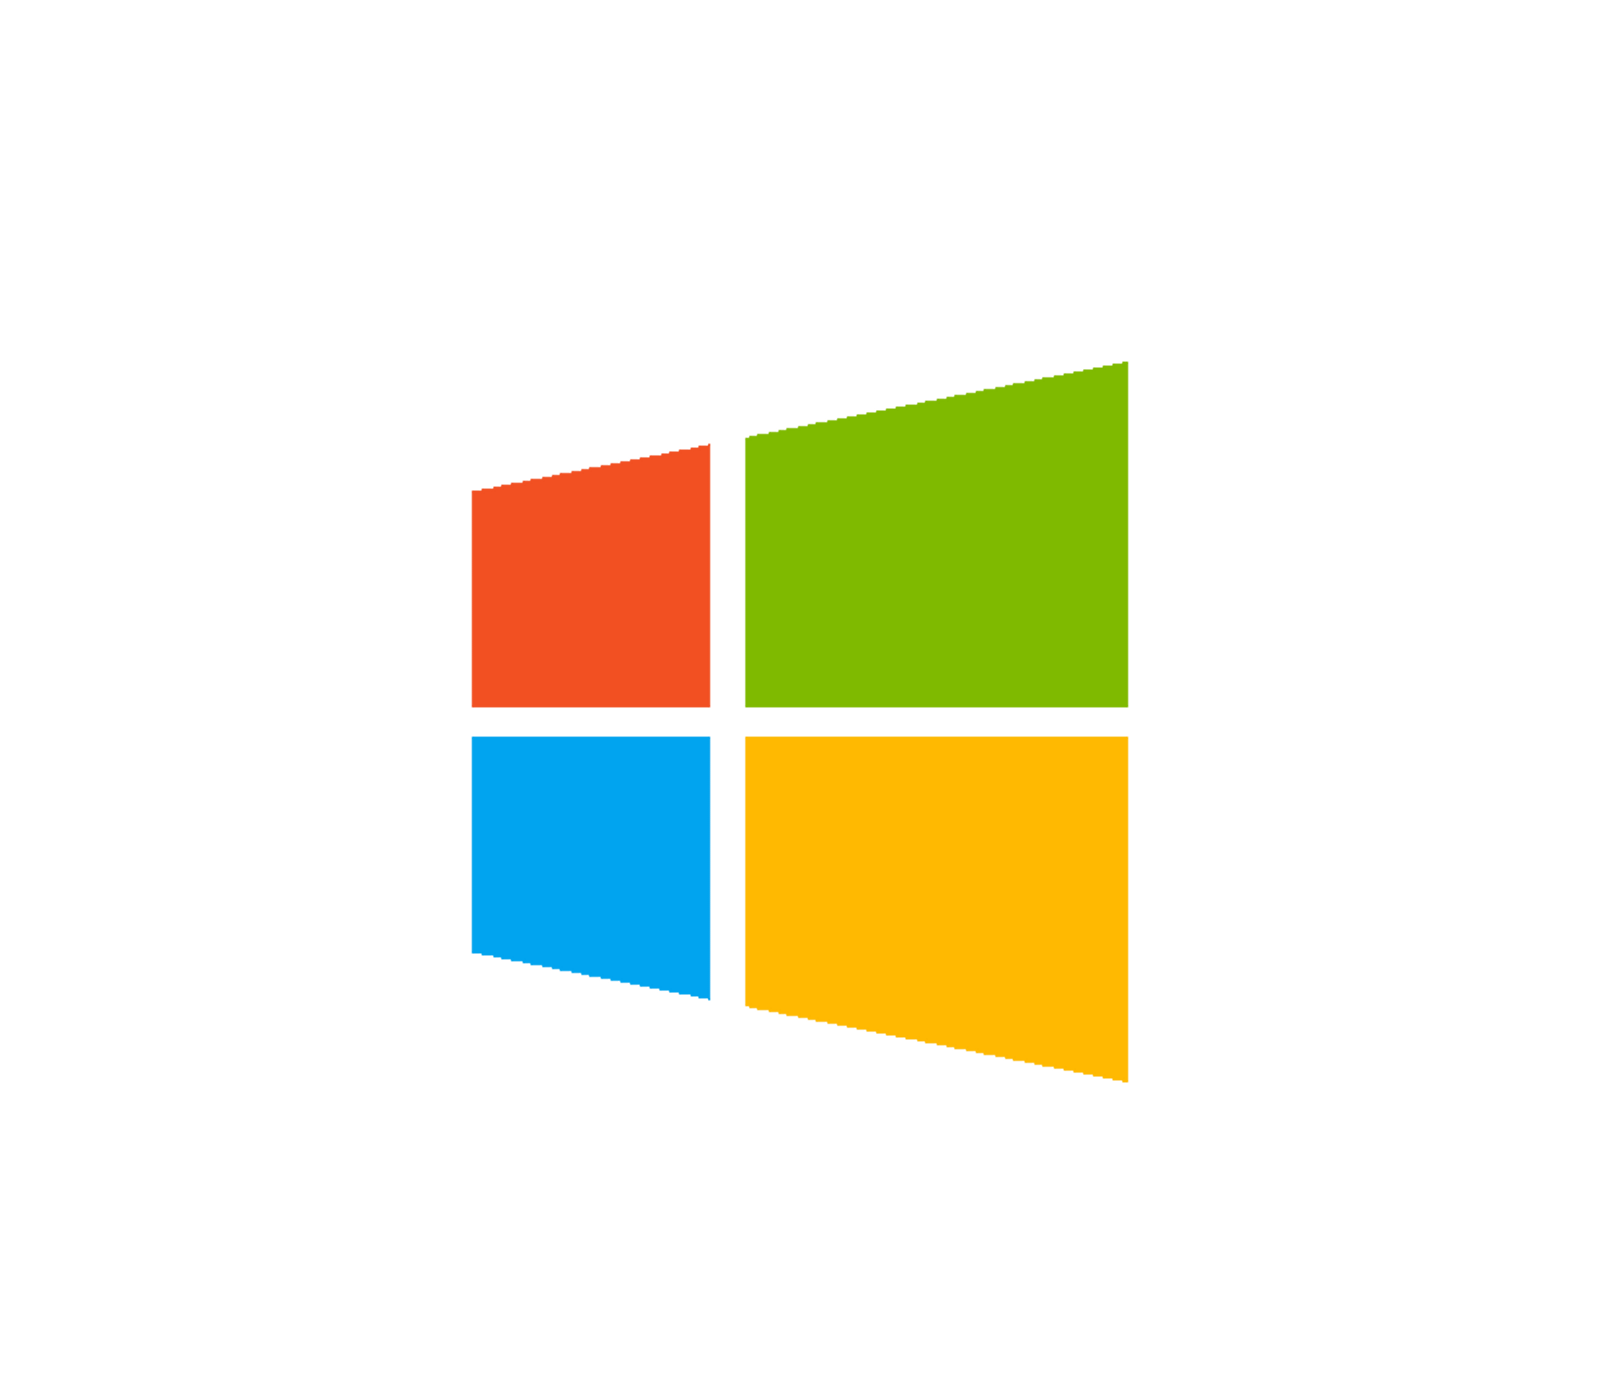 Windows 10 Logo Icon #98057 - Free Icons Library